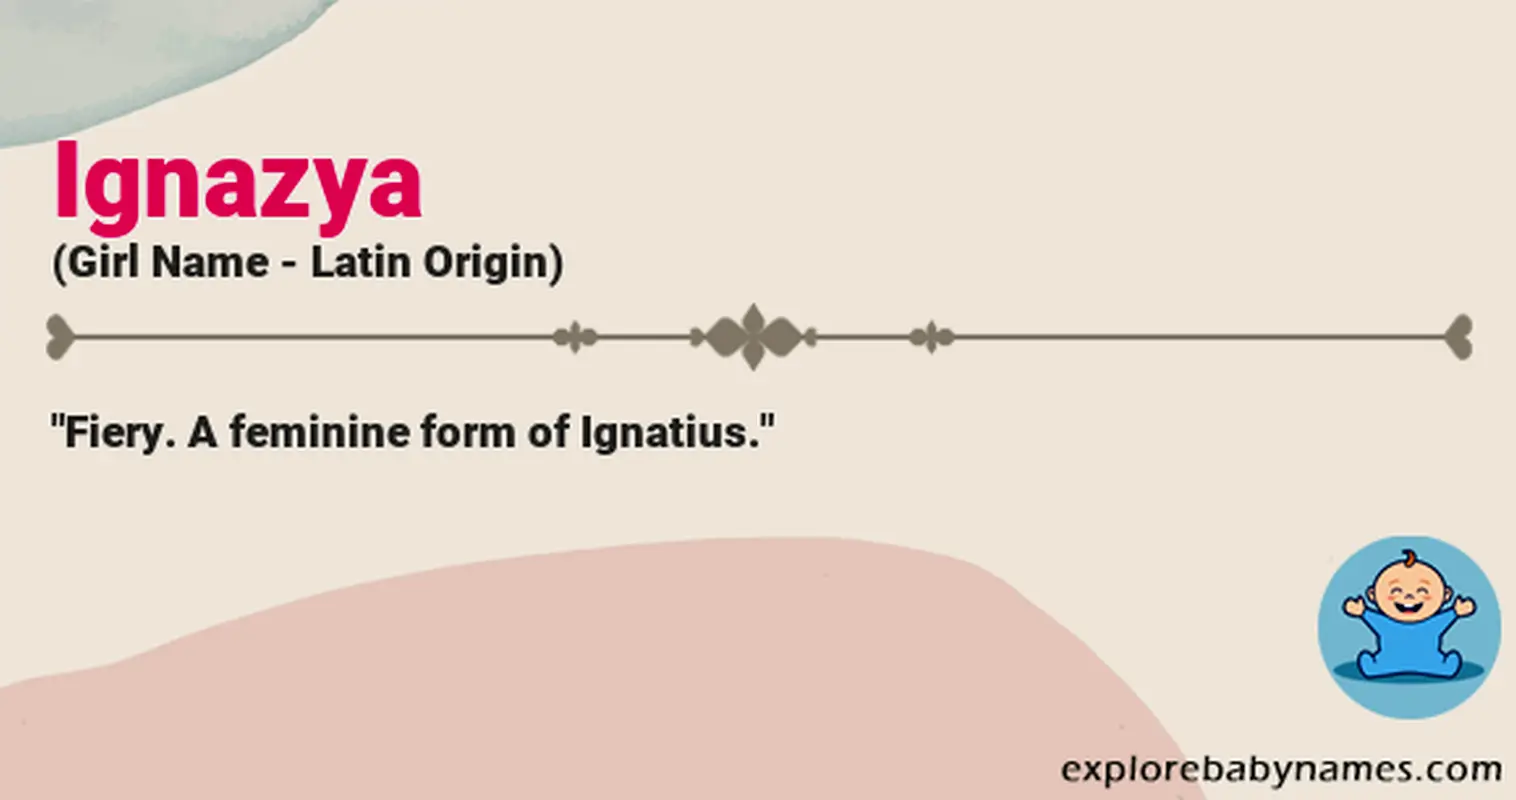 Meaning of Ignazya